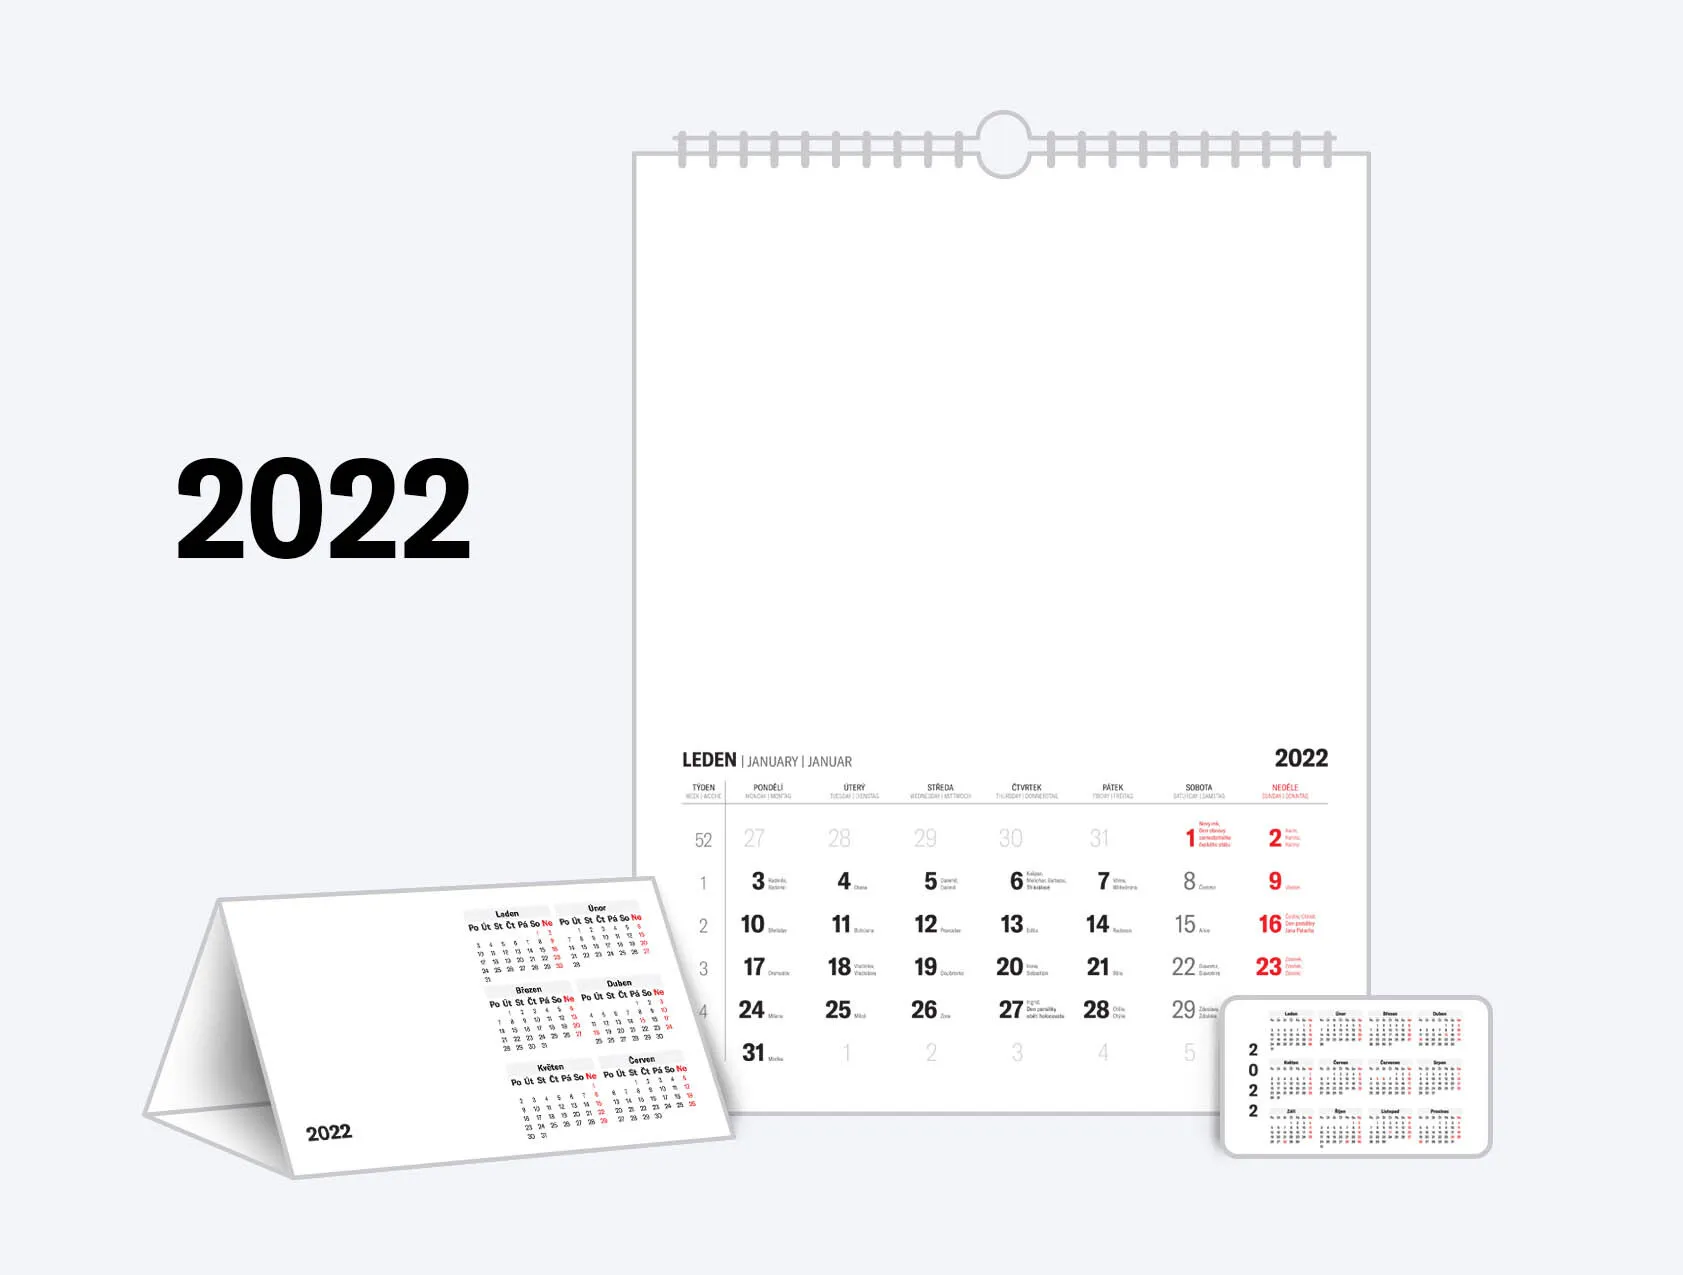 Kalendária 2022 ke stažení